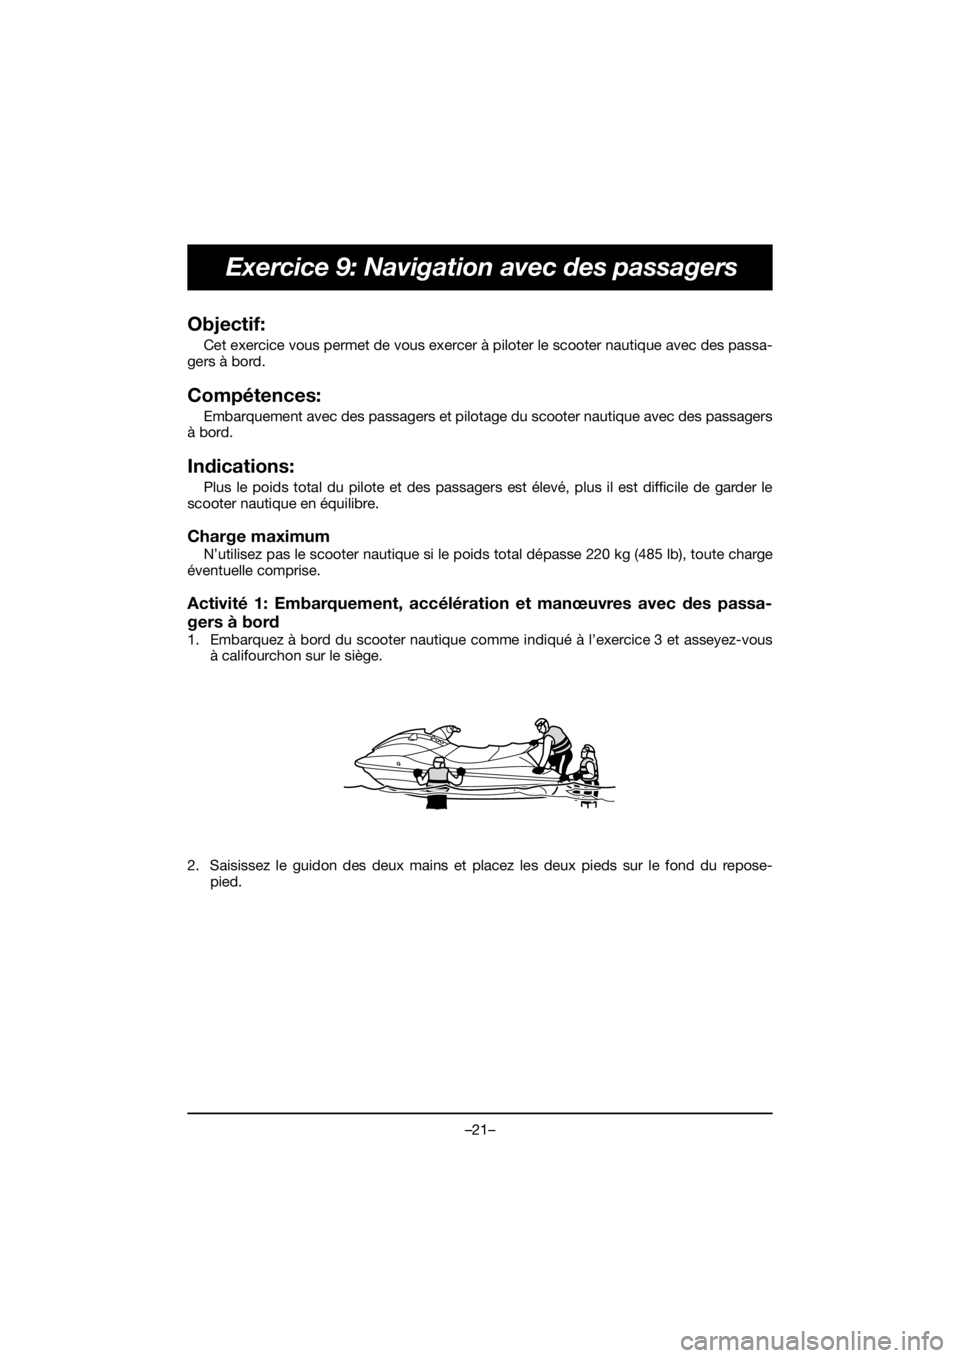 YAMAHA EX 2020  Manuale duso (in Italian) –21–
Exercice 9: Navigation avec des passagers
Objectif: 
Cet exercice vous permet de vous exercer à piloter le scooter nautique avec des passa-
gers à bord.
Compétences: 
Embarquement avec des